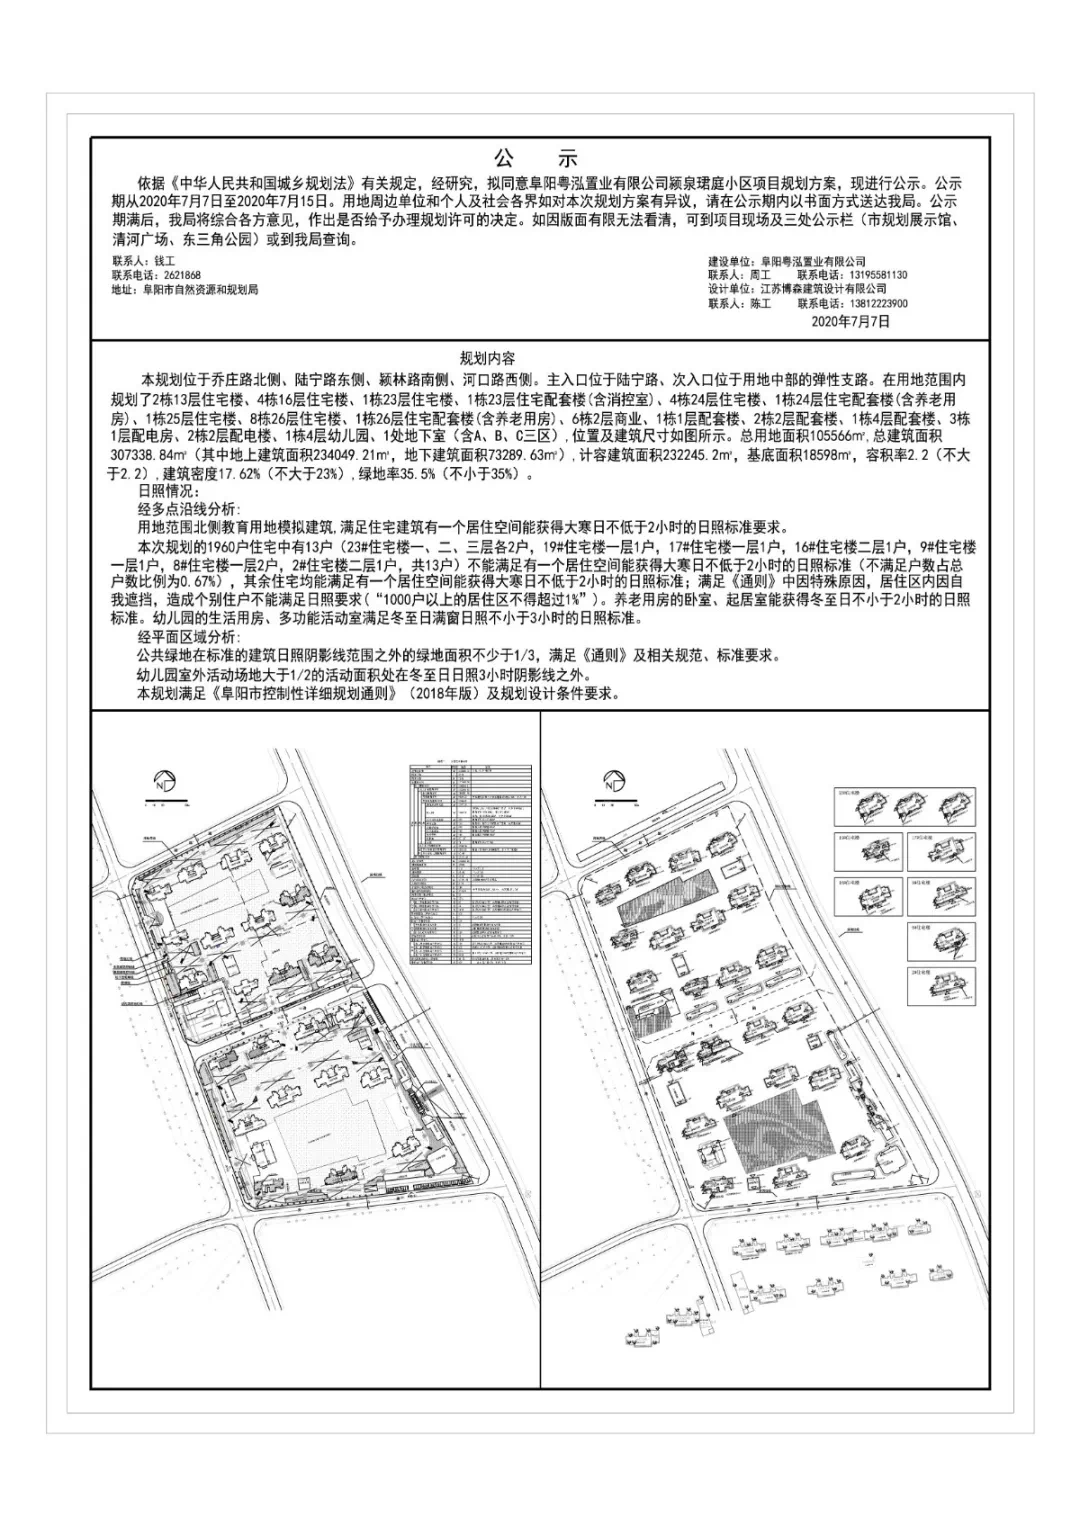 颍泉多个项目规划公示,涉及恒大、北京城房